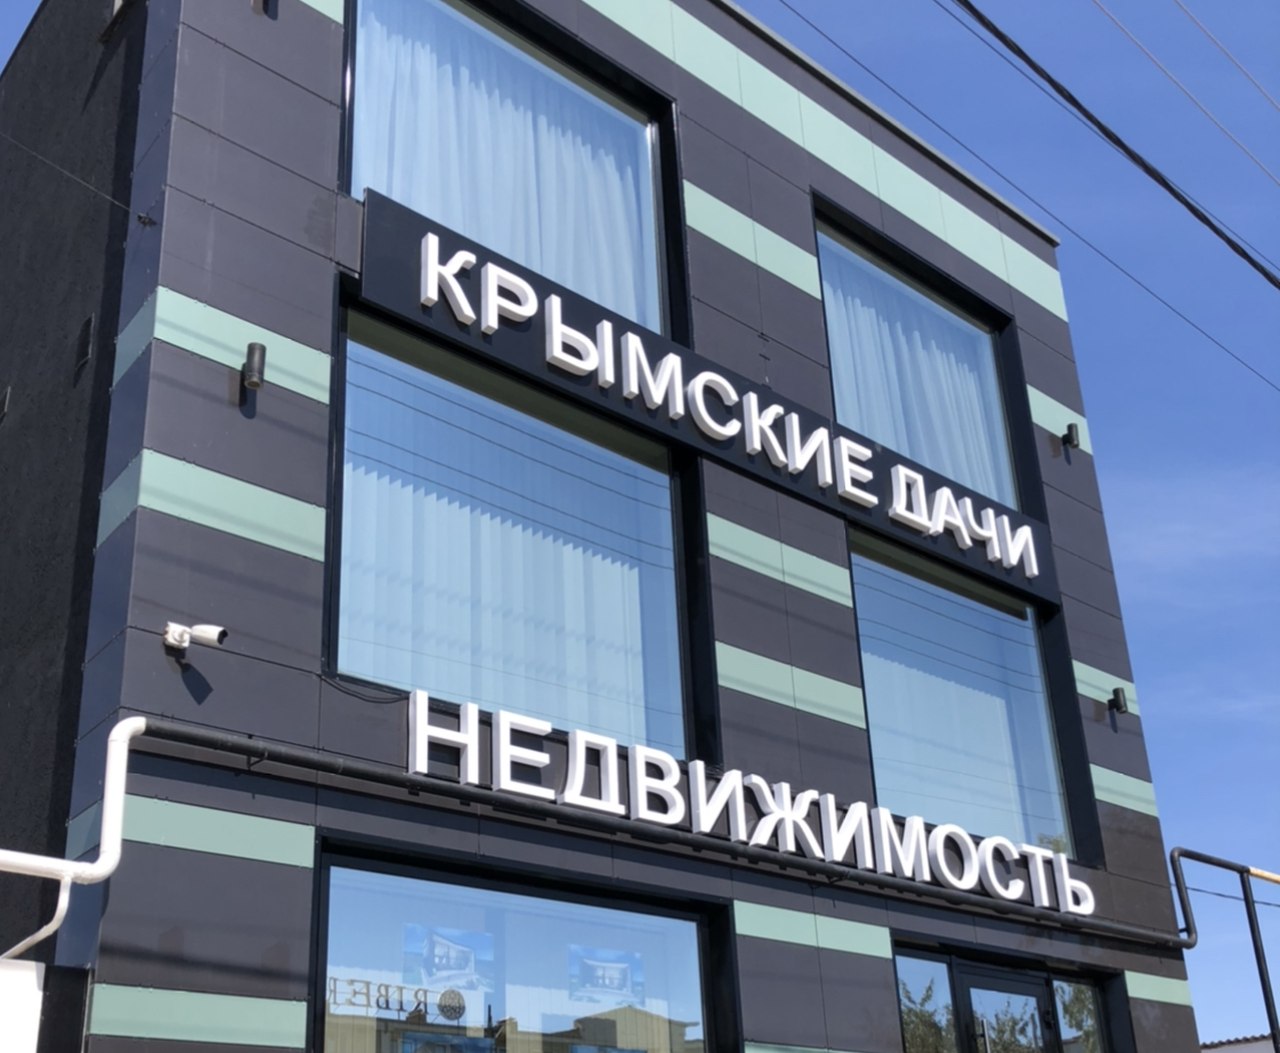 фото: Крымские дачи» оказались выгодными для инвестирования